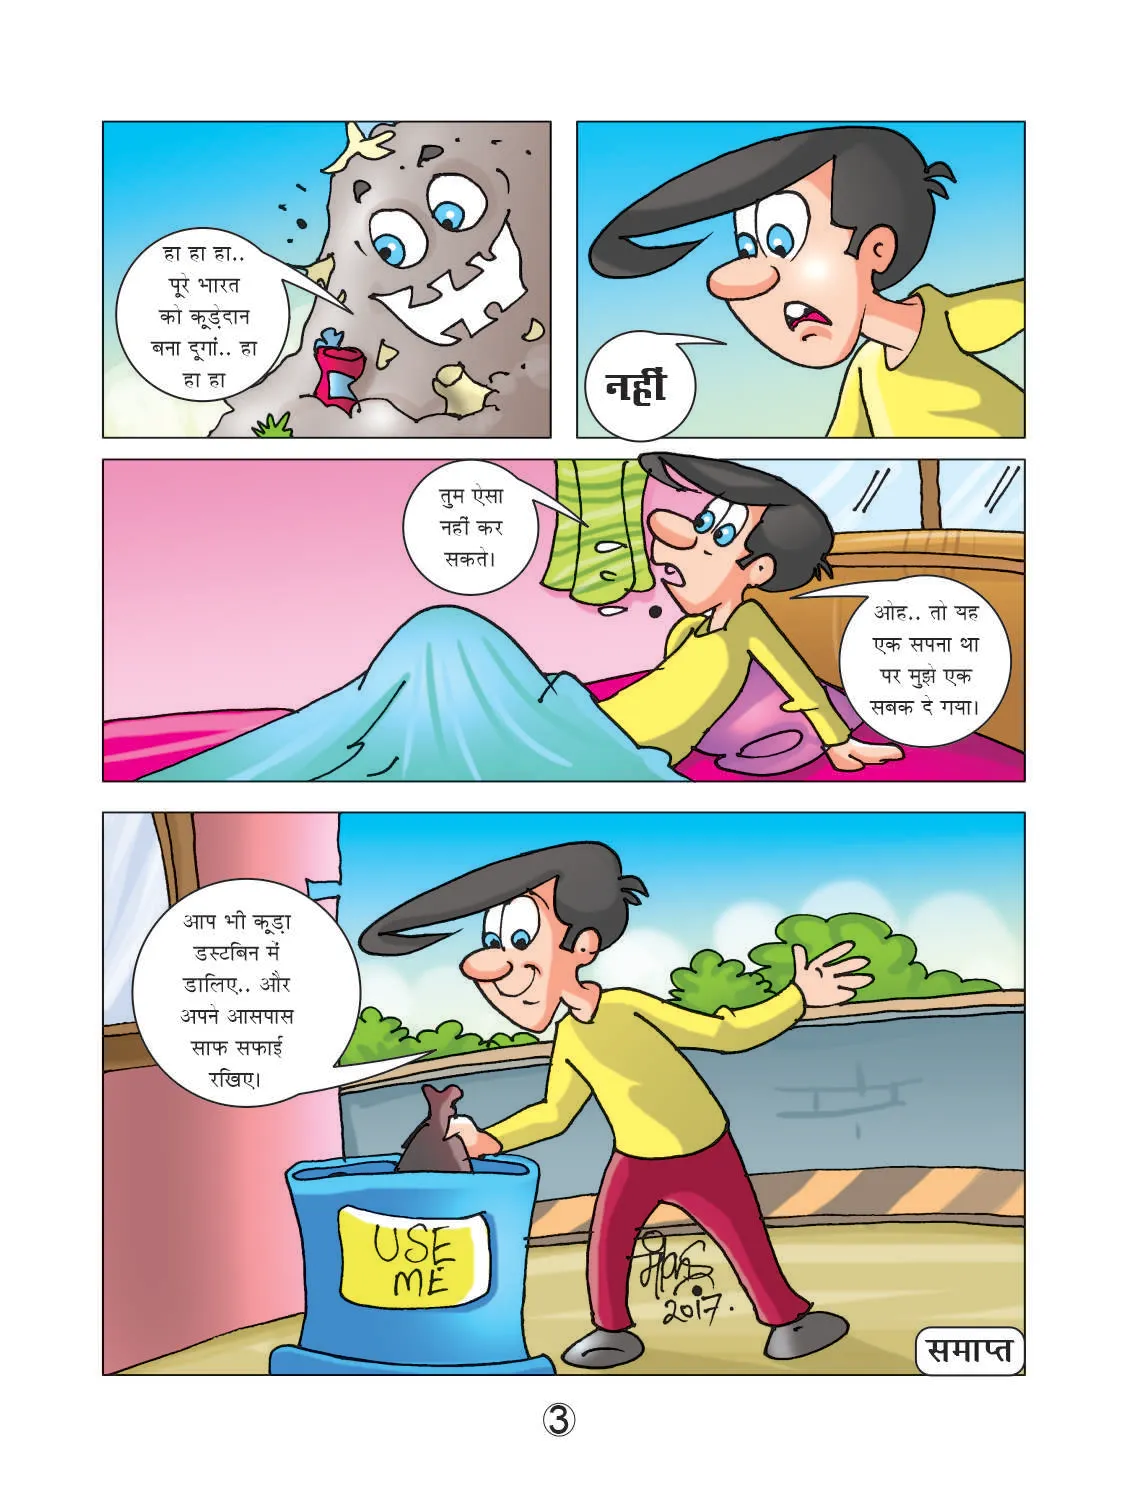 Natkhat neetu waking up from sleep cartoon character